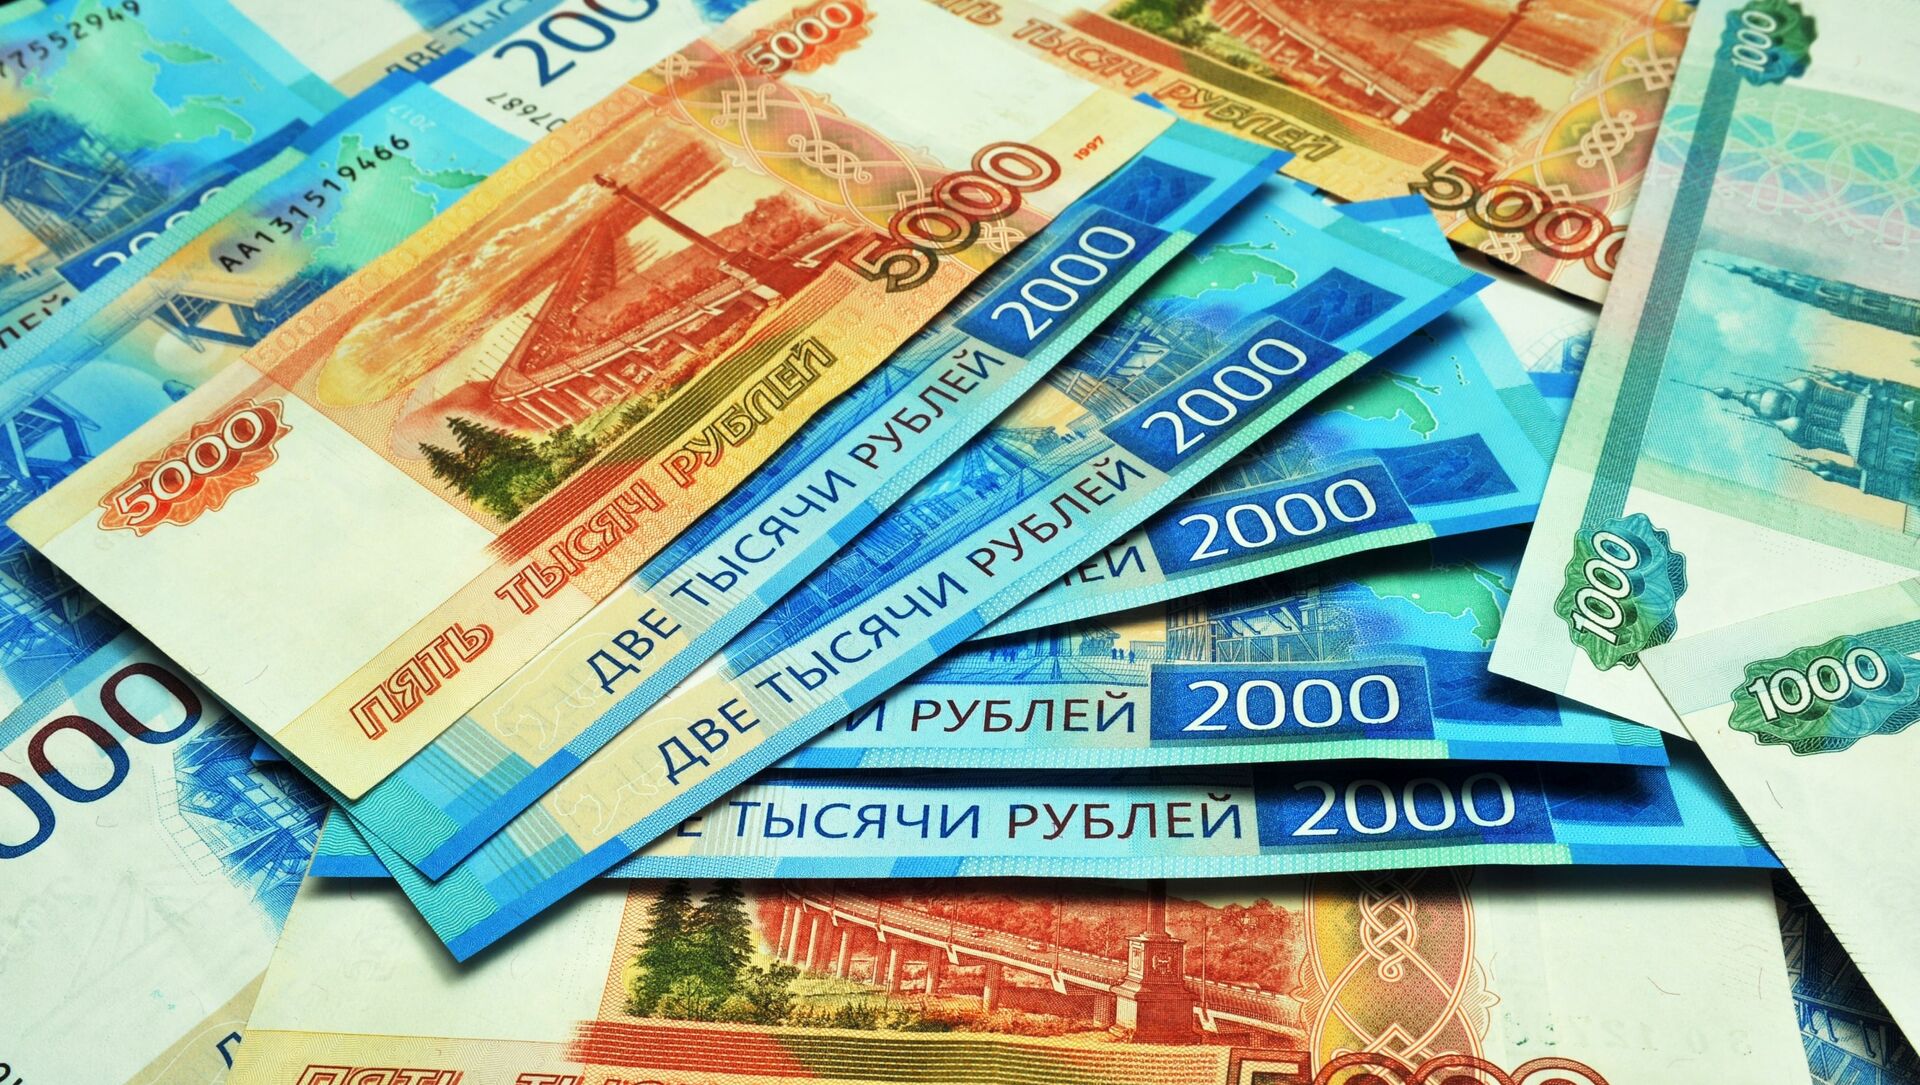 Банкноты номиналом 1000, 2000 и 5000 рублей. - Sputnik Аҧсны, 1920, 02.05.2021